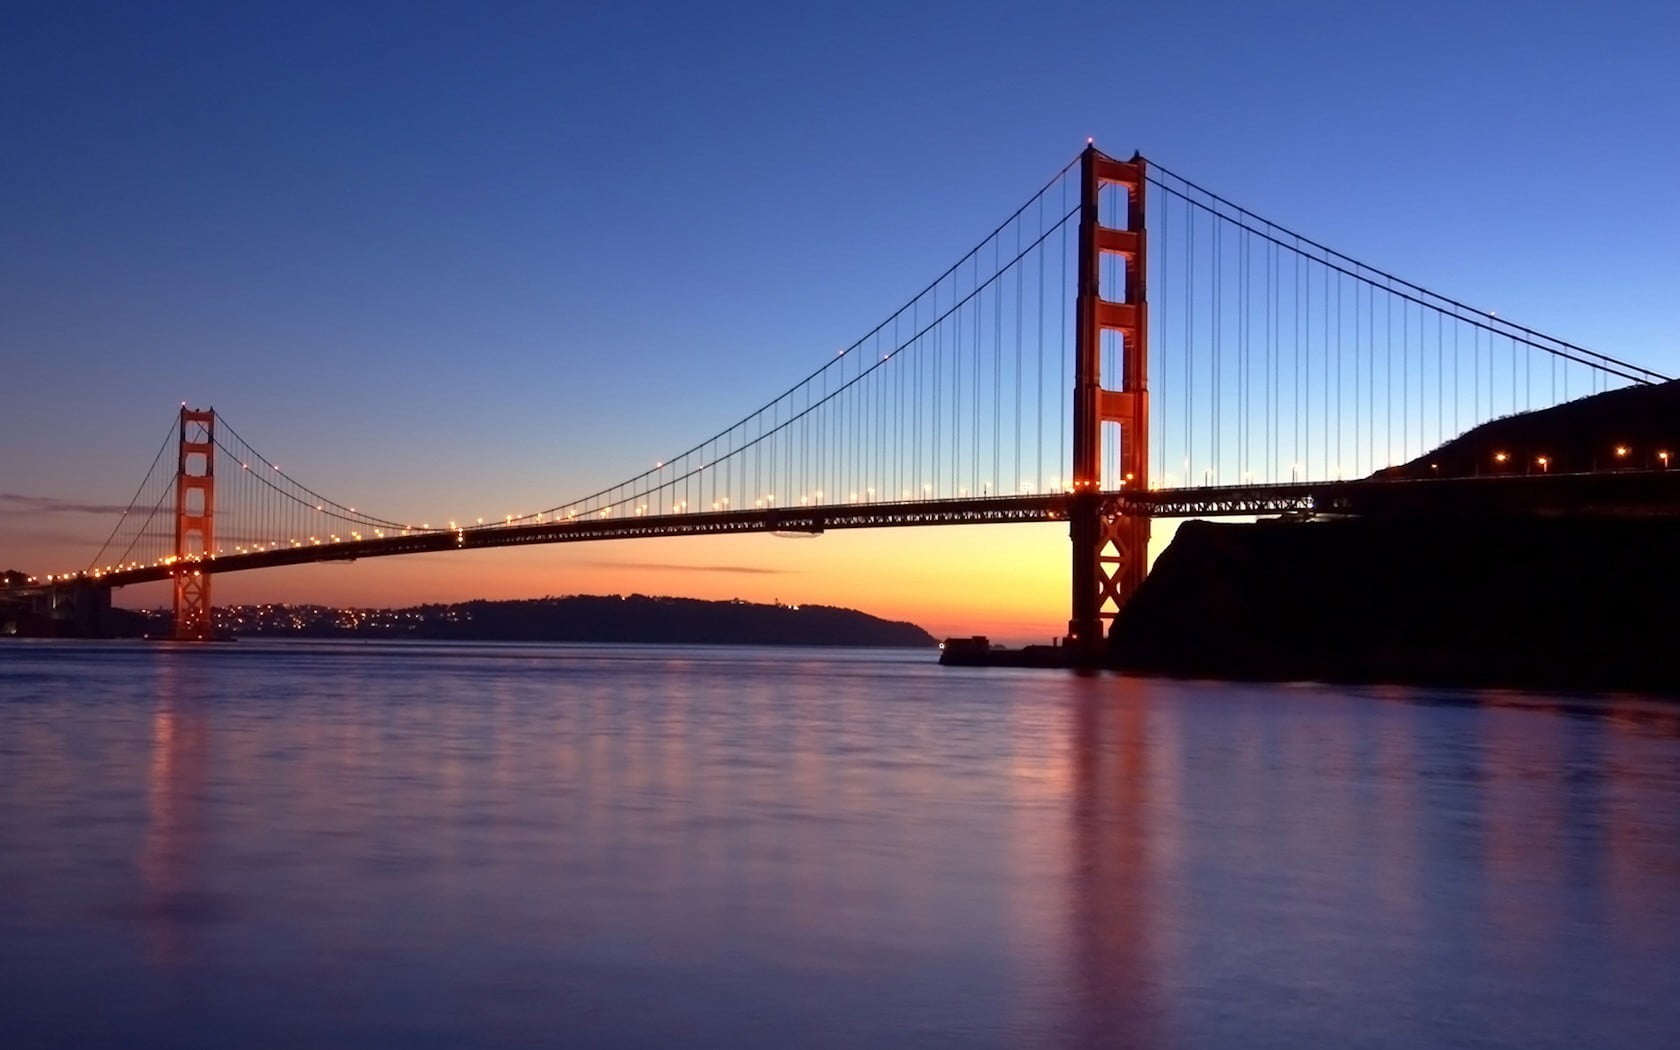 Golden Gate bridge, Golden Gate Bridge, city, urban, river